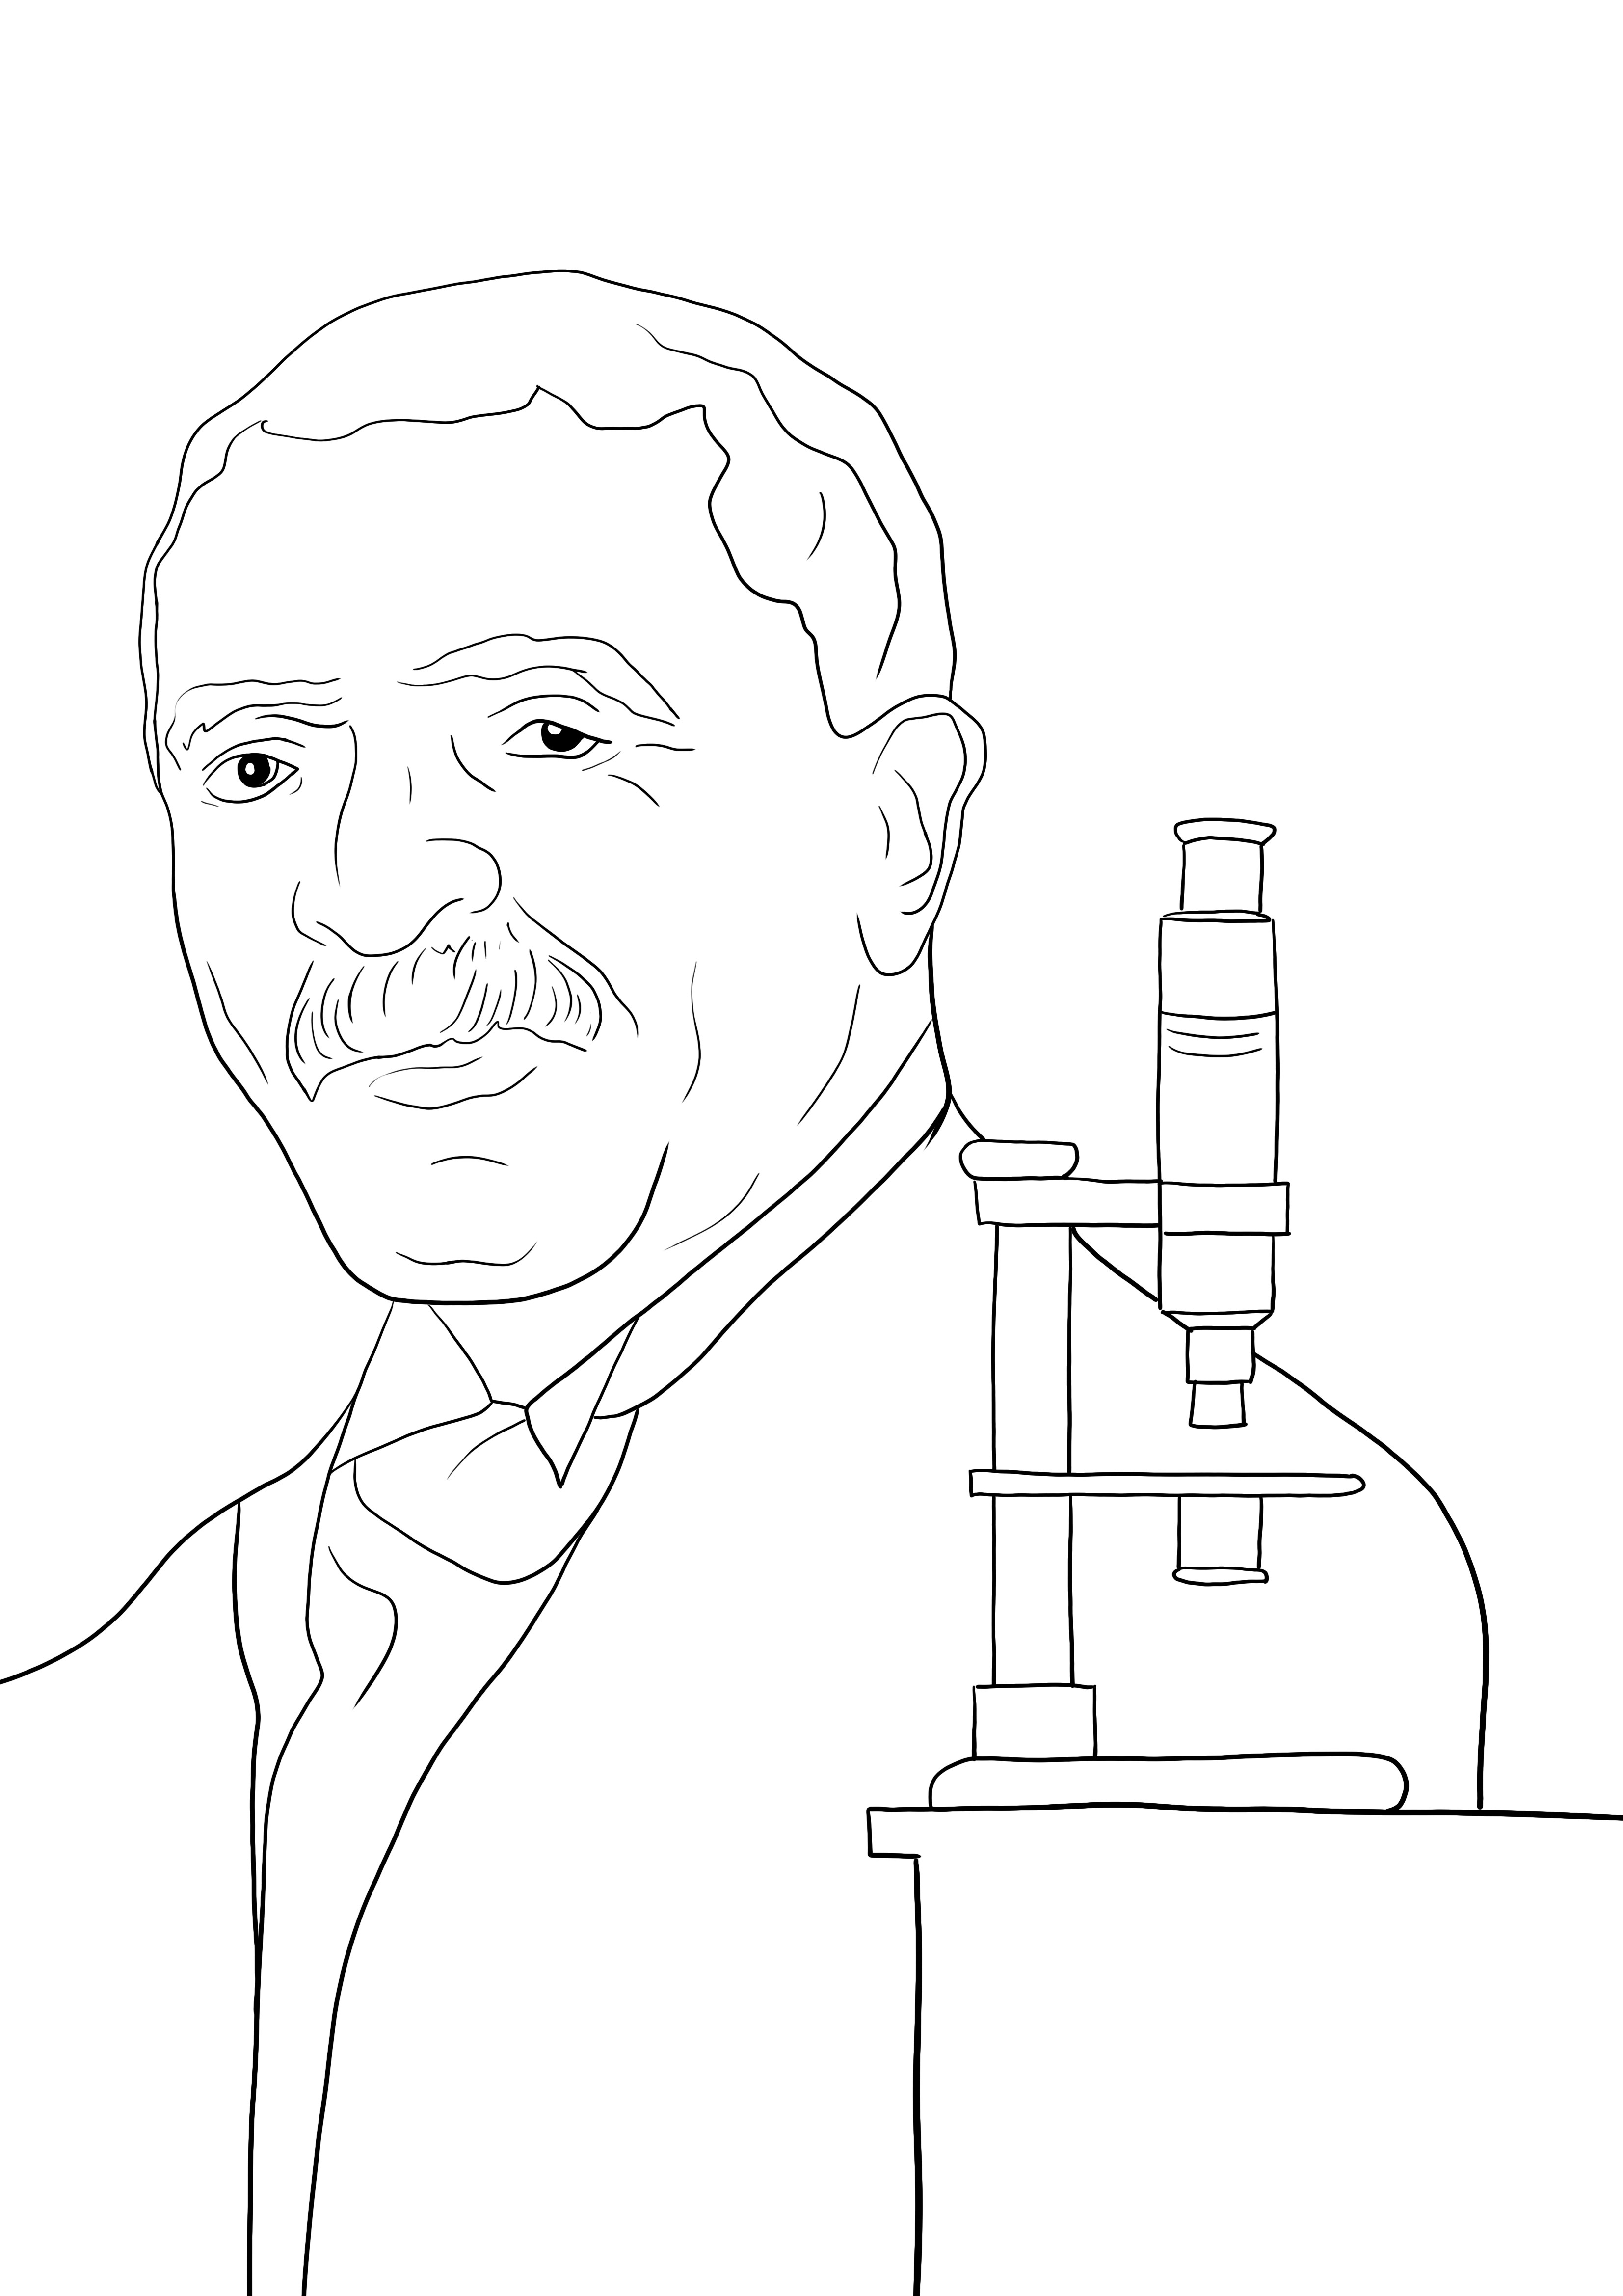 George Washington Carver kleurplaat gratis te gebruiken kleurplaat